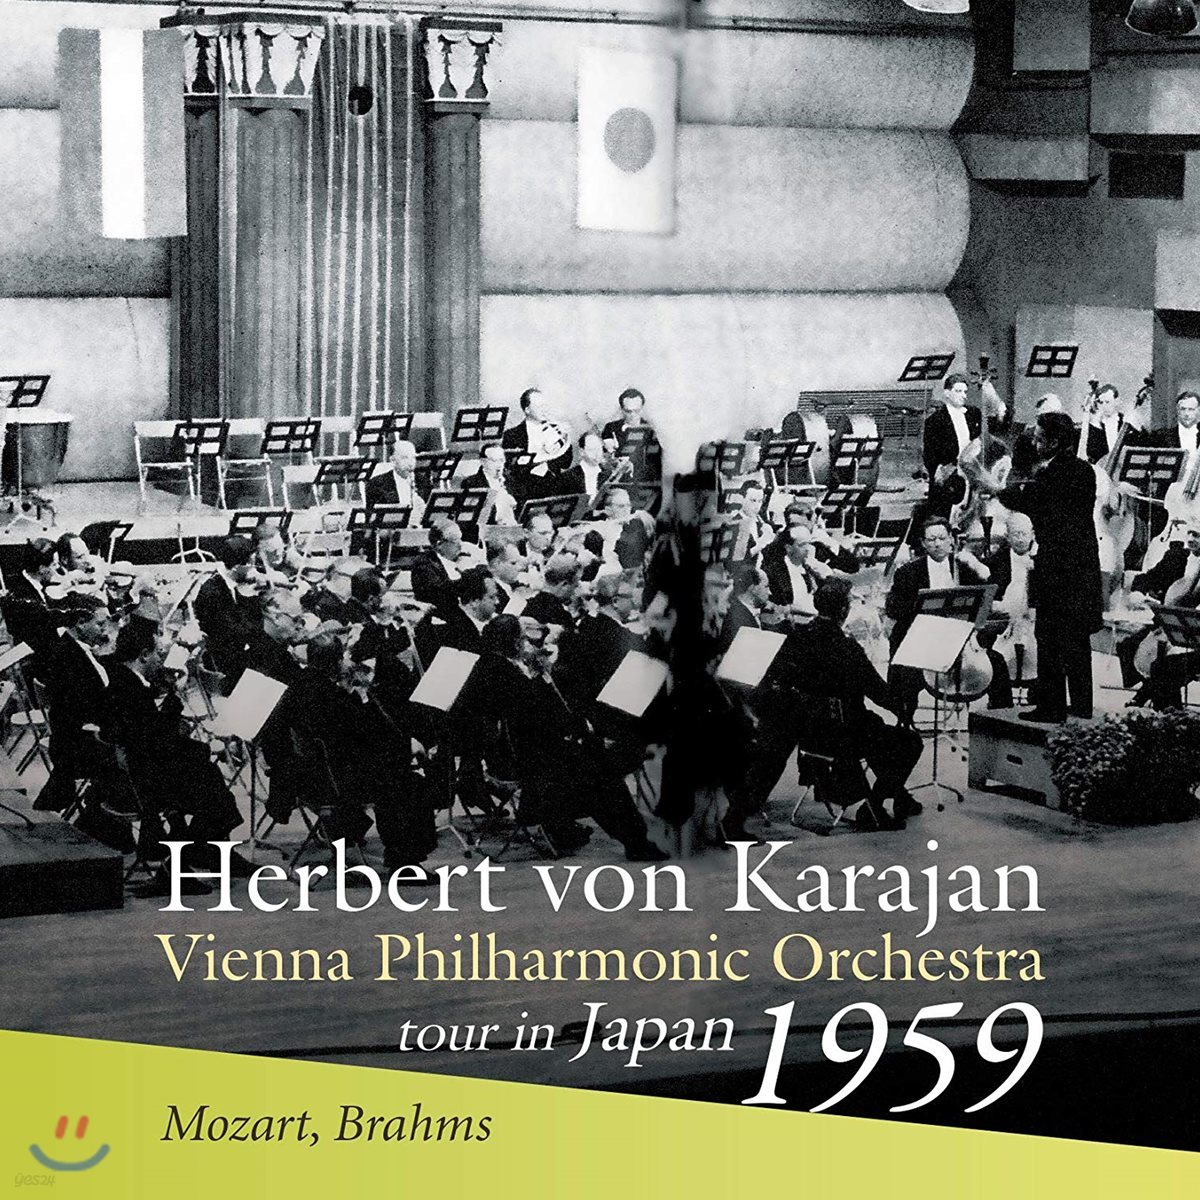 Herbert von Karajan 모차르트: 교향곡 40번 K. 550 / 브람스: 교향곡 1번 Op. 68 (Mozart: Symphony No. 40 / Brahms: Symphony No. 1)